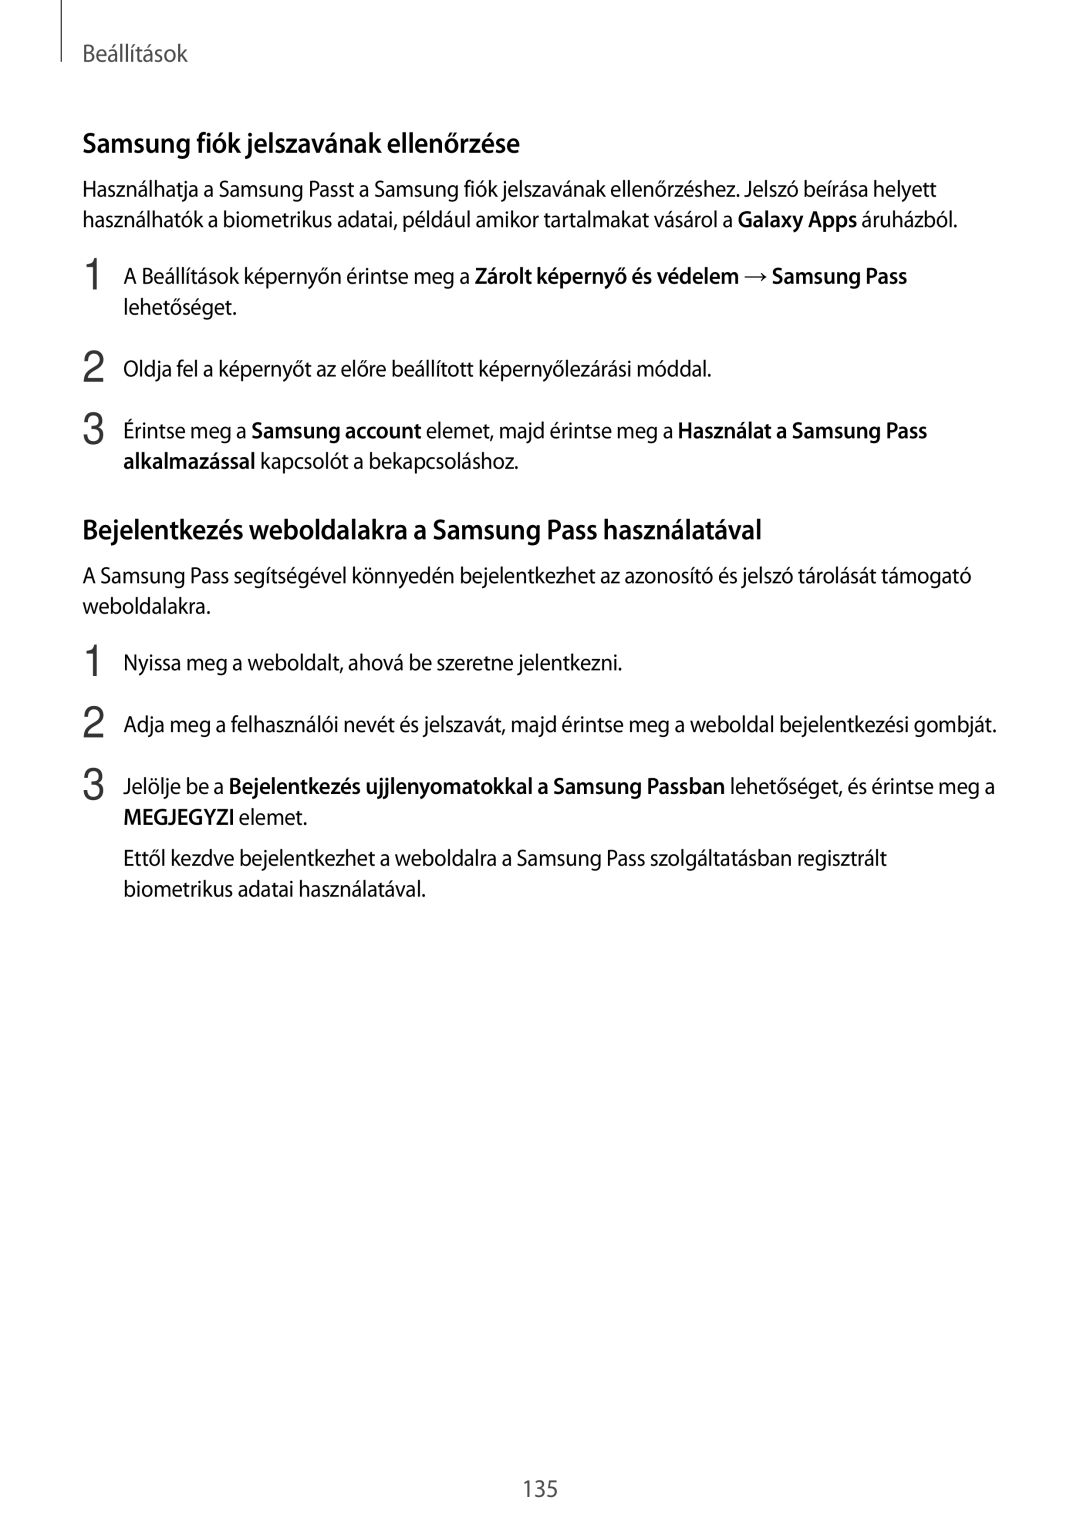 Samsung SM-T395NZKAXEH manual Samsung fiók jelszavának ellenőrzése, Bejelentkezés weboldalakra a Samsung Pass használatával 